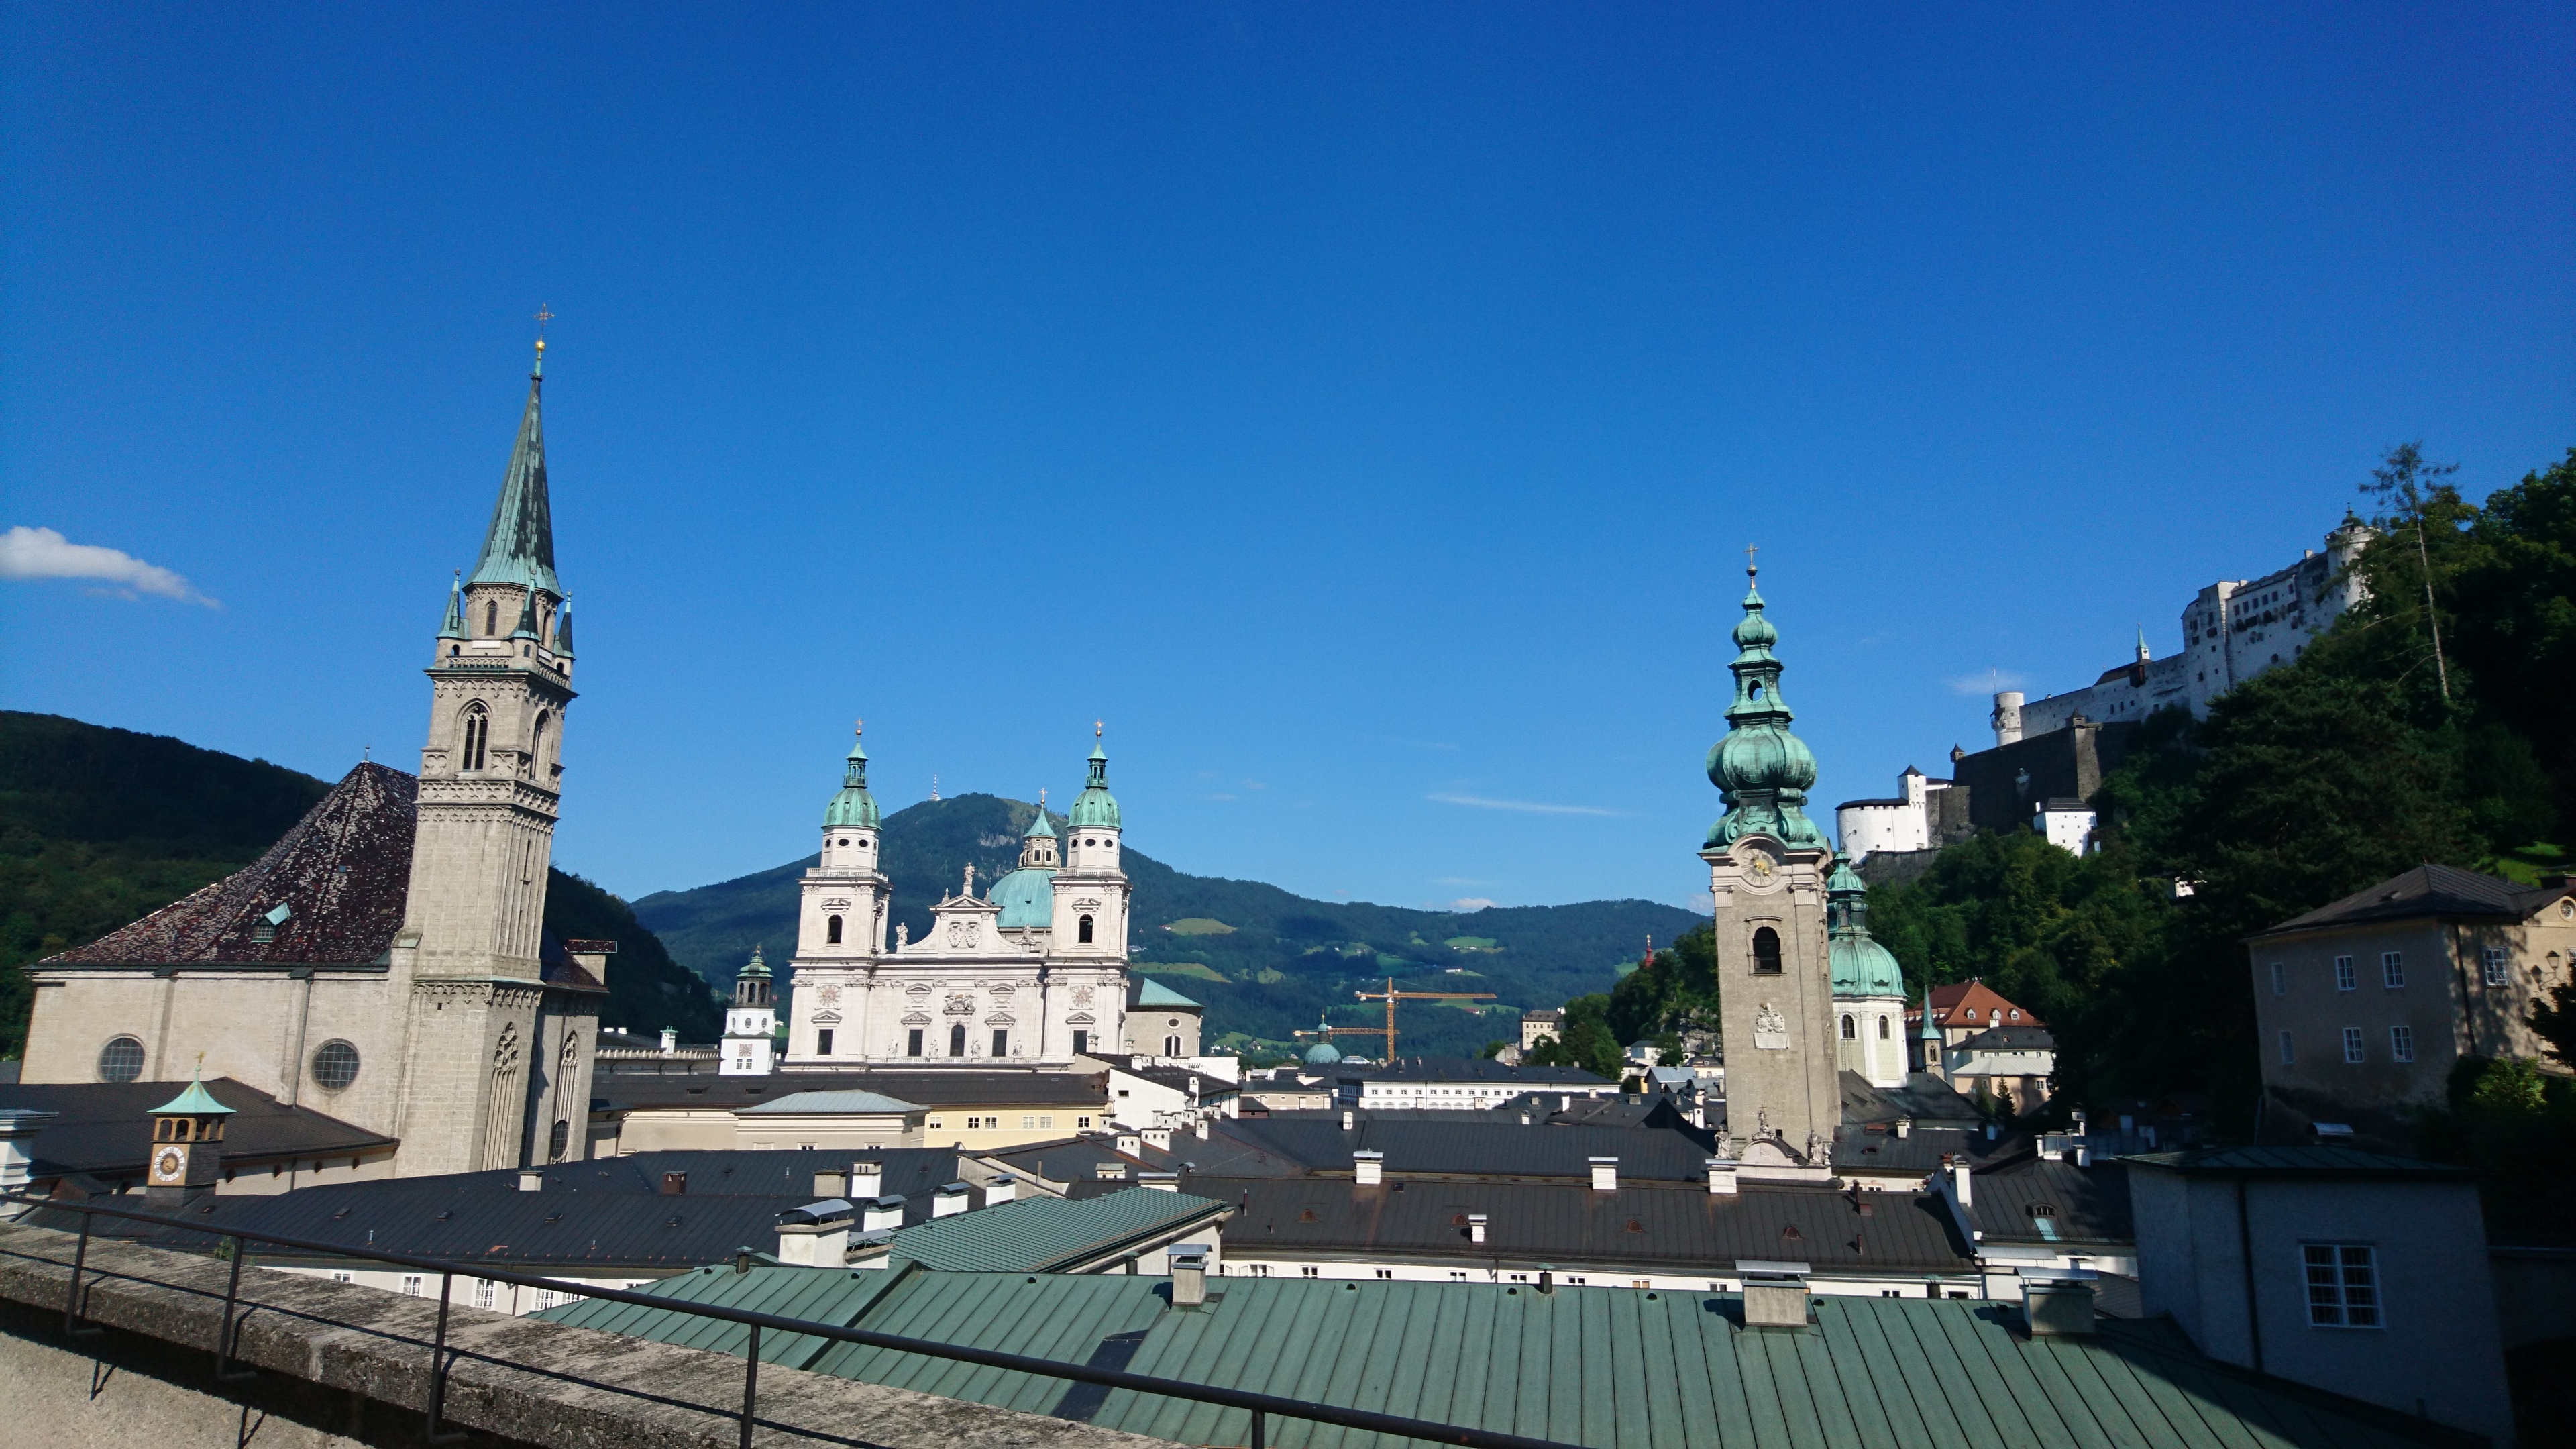 Salzburg látképe - ilyen tájképeket készít Mr. X szűrők nélkül